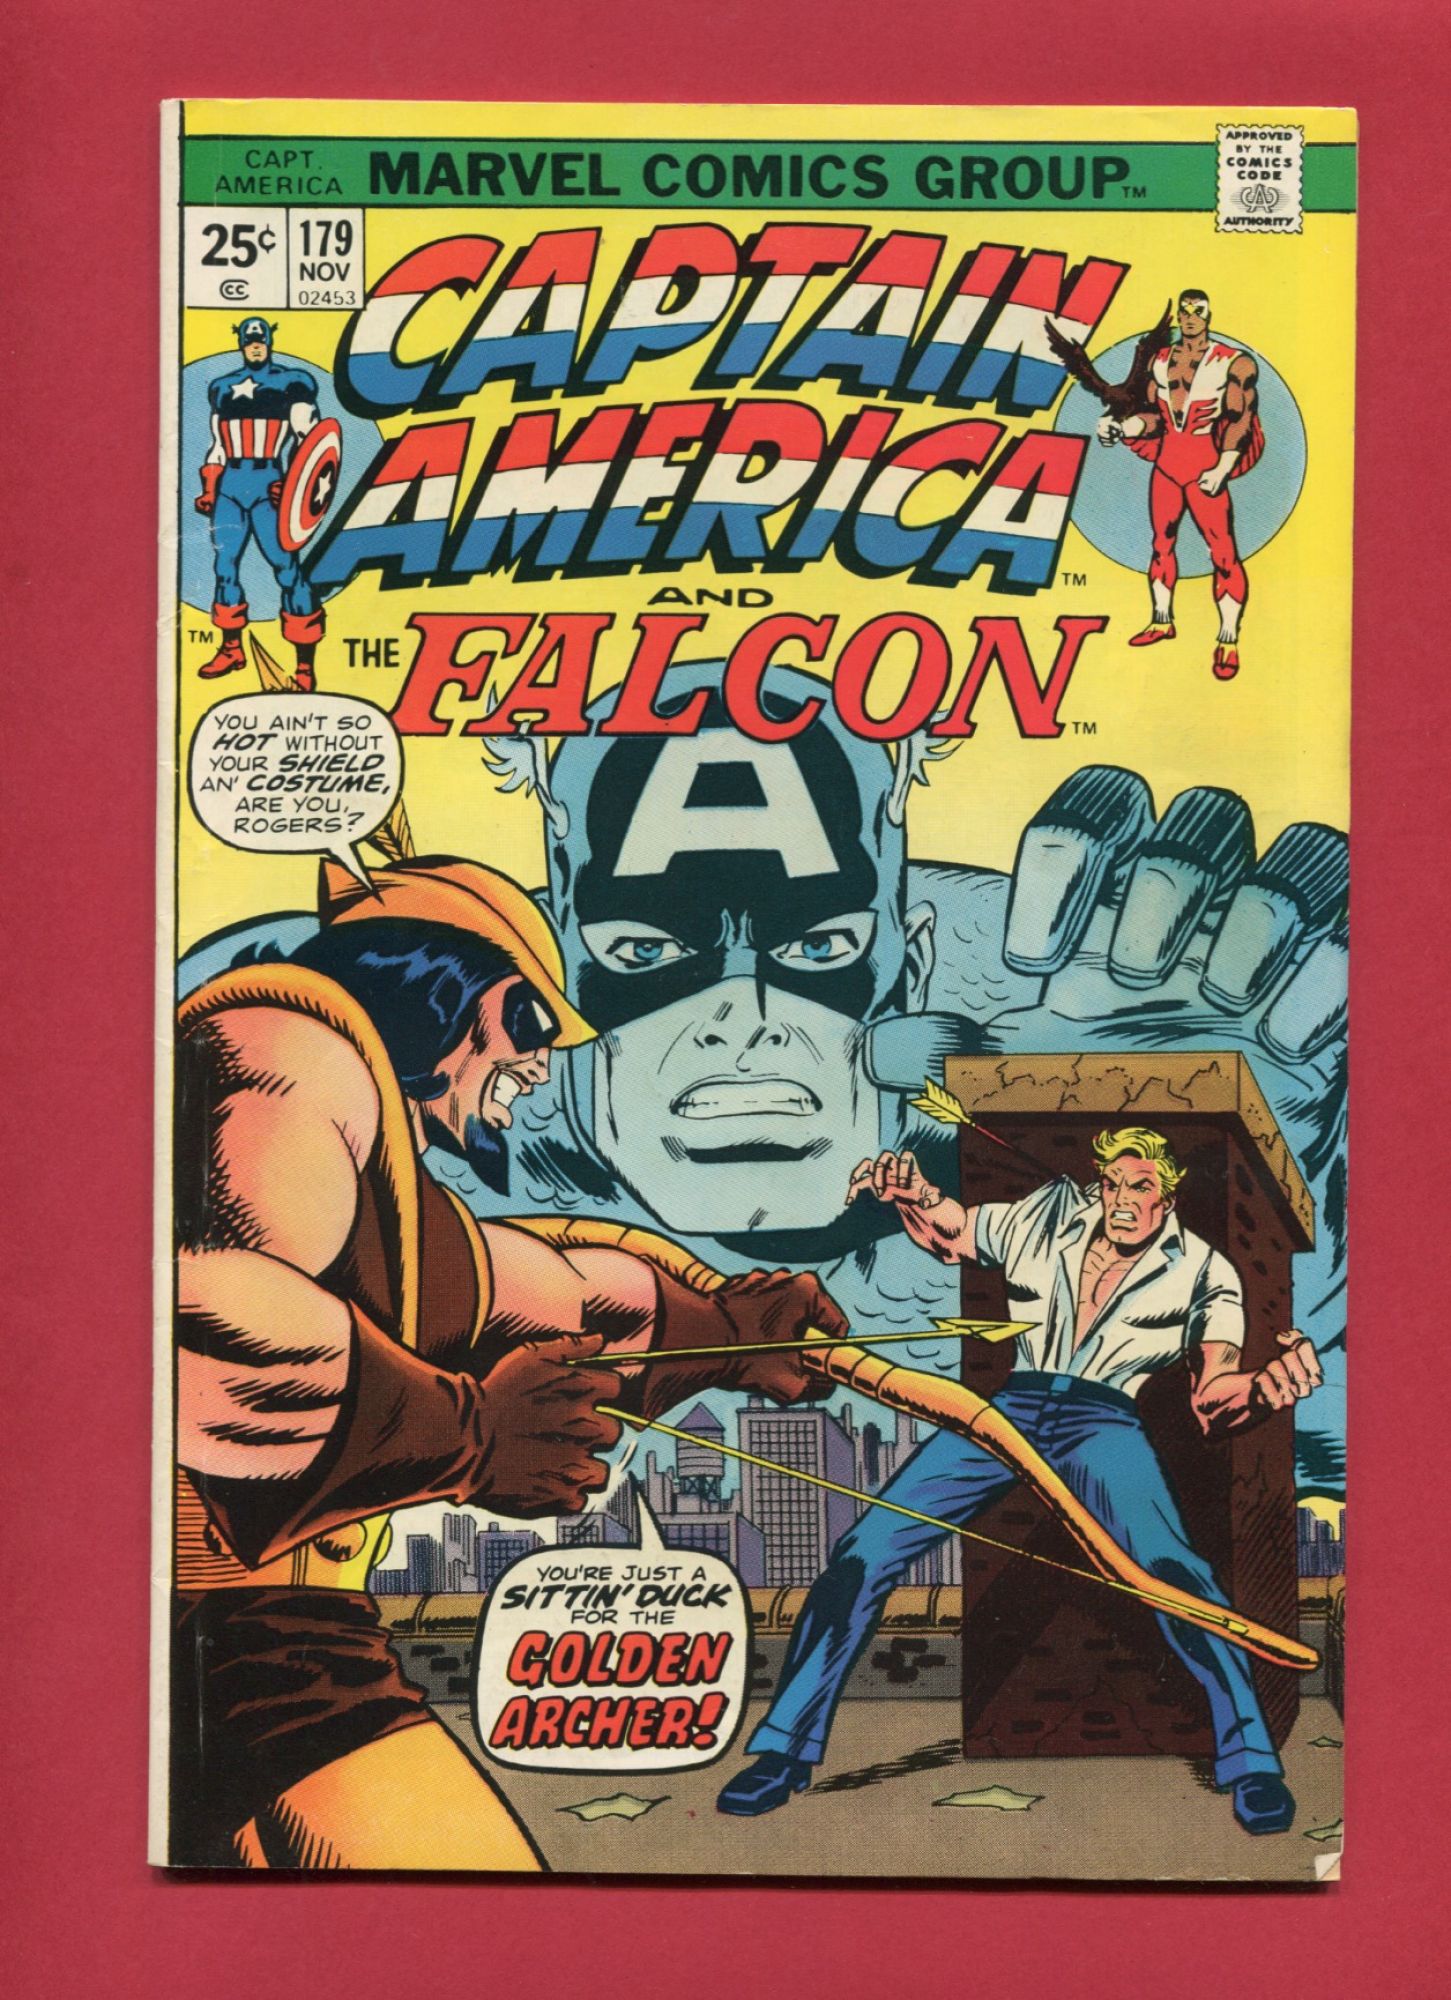 Captain America #179, Nov 1974, 6.0 FN